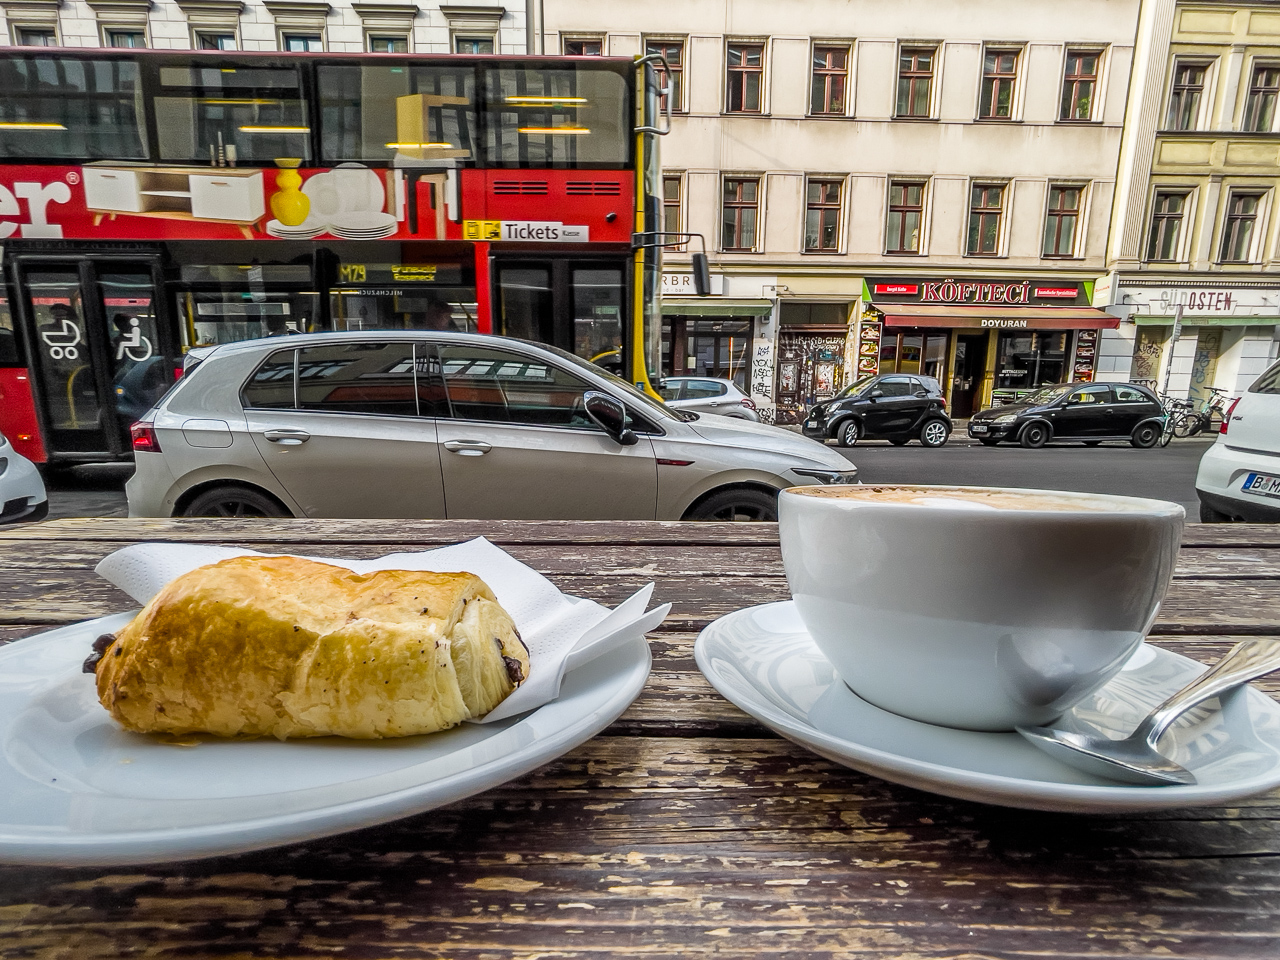 aus niedriger Perspektive fotografierte Teller mit einem SchokoCroissant und einer KaffeeTassee auf einer alten, abgeschabten HolzTischPlatte. Dahinter StraßenSzene einer Großstadt mit vielen Autos und einem DoppelStockBus